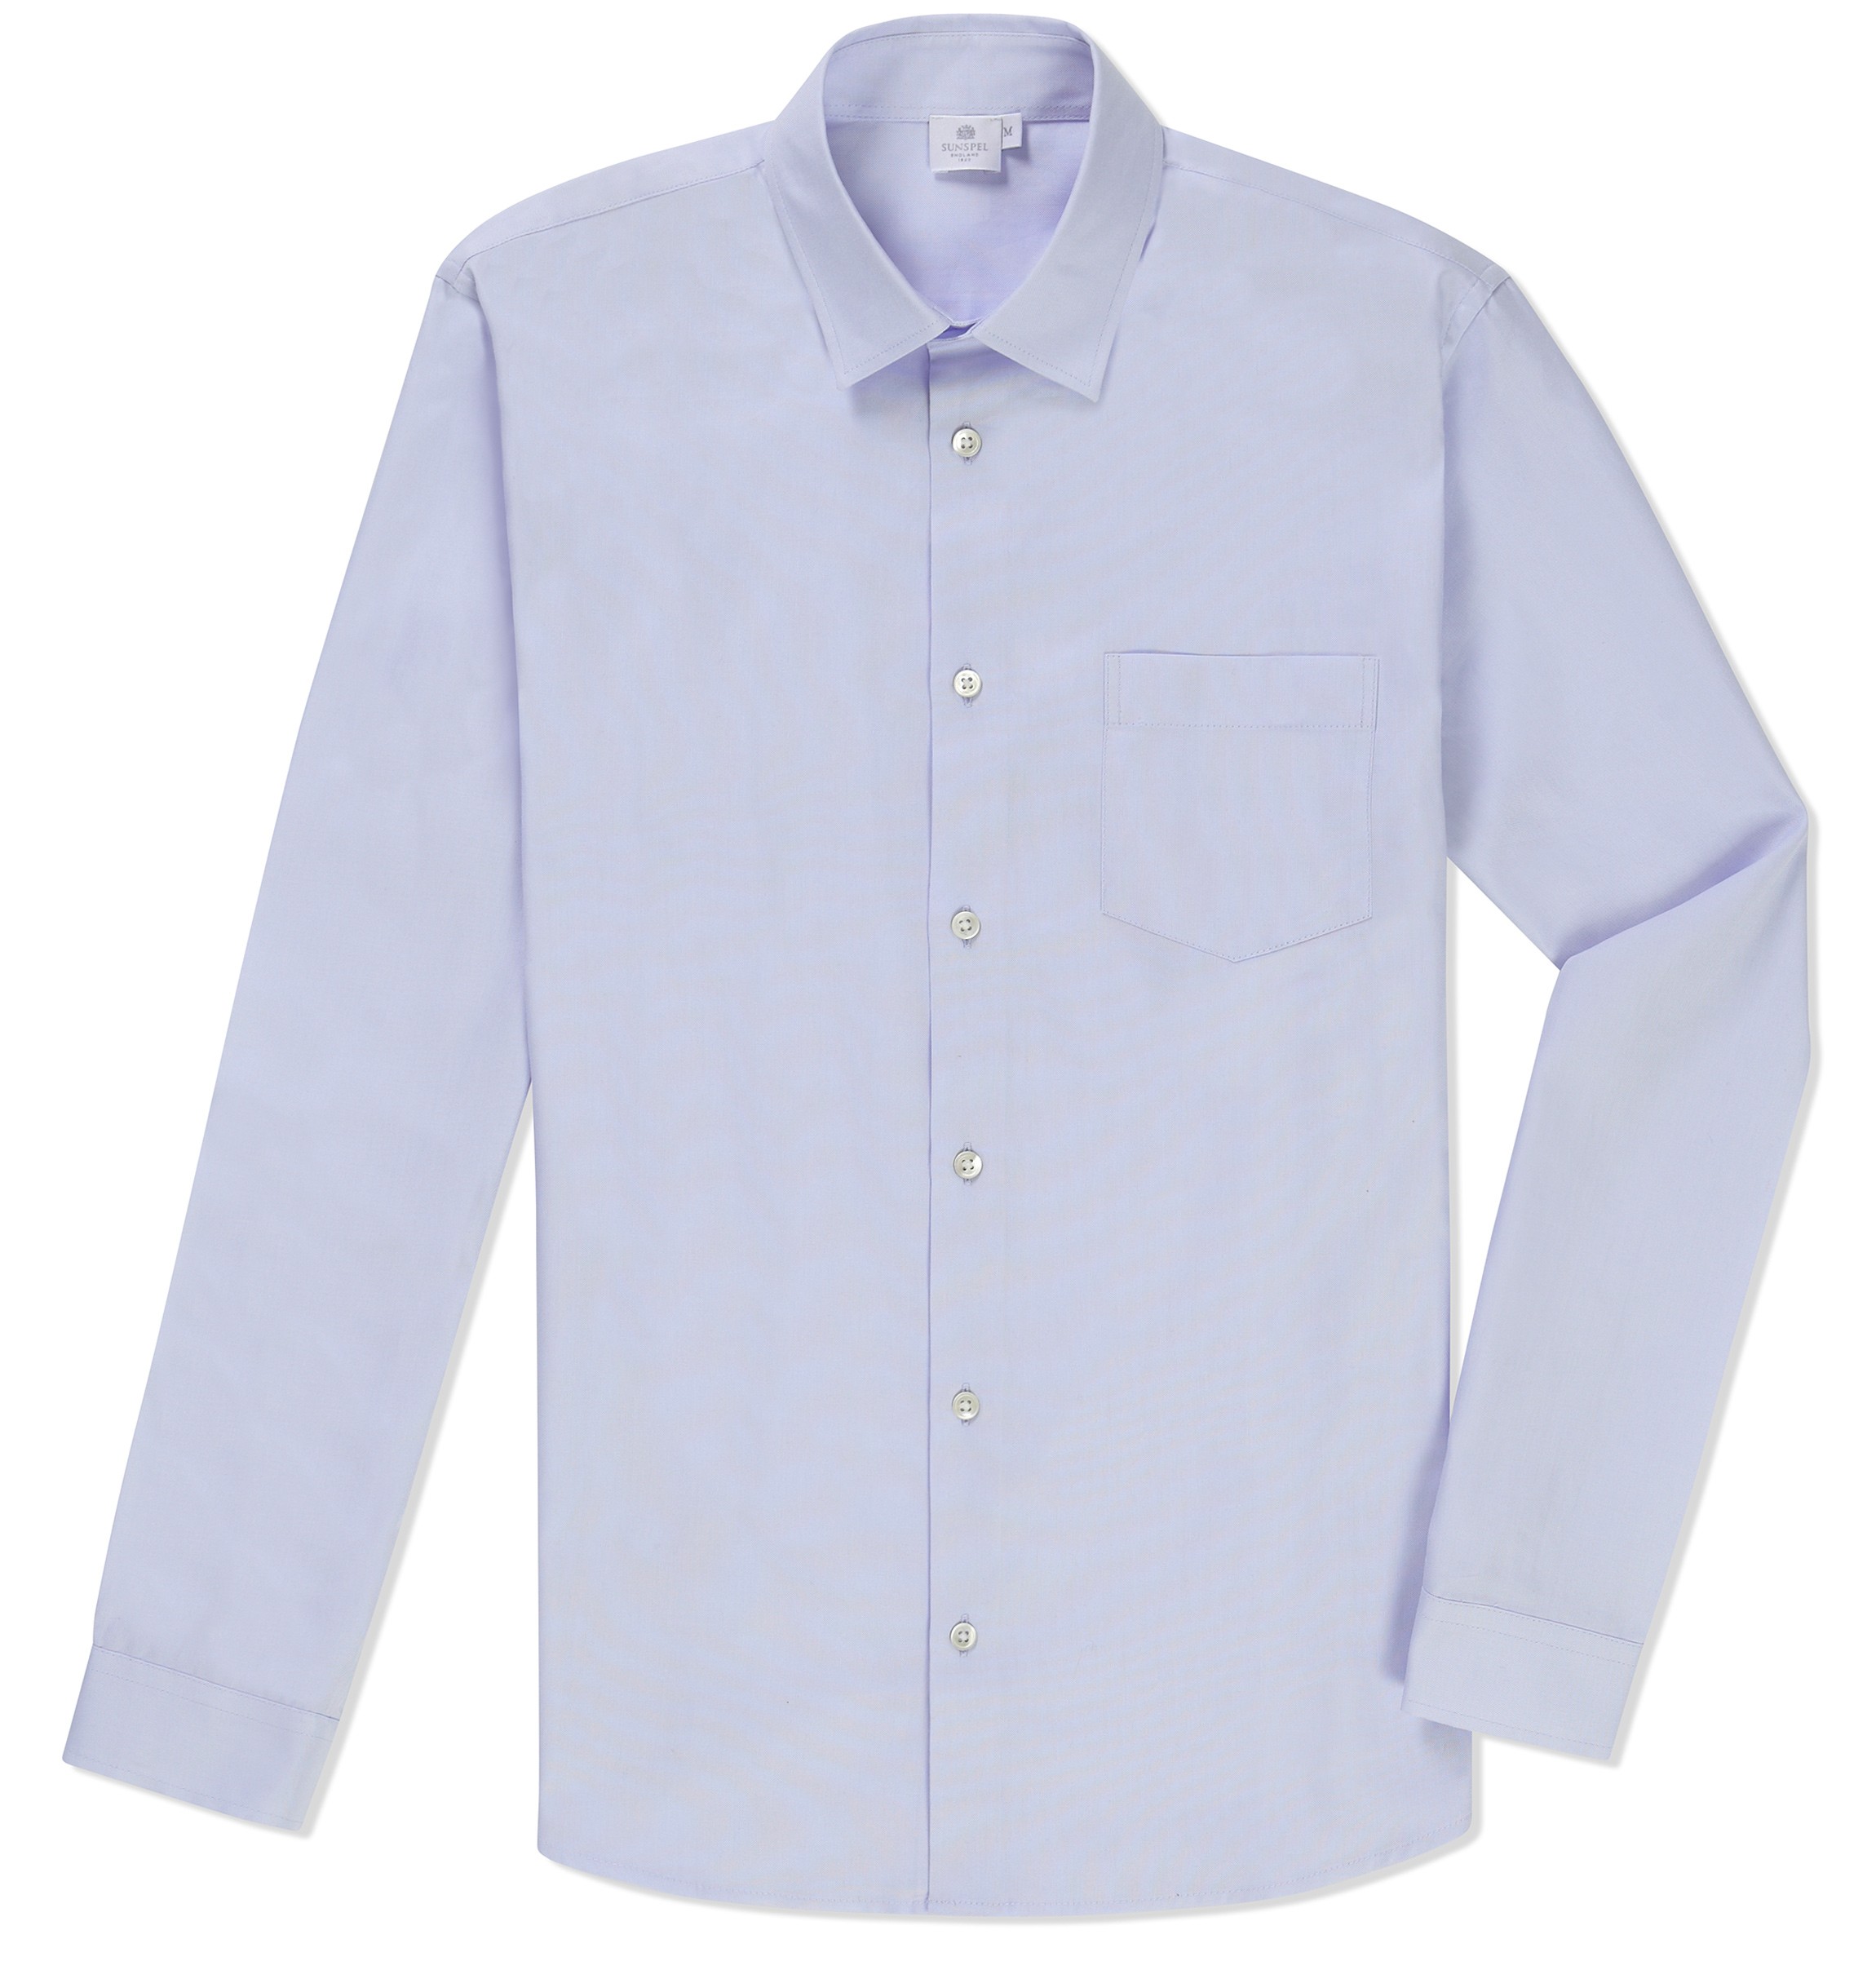 manuals top five button downs poplin cotton shirt by sunspel